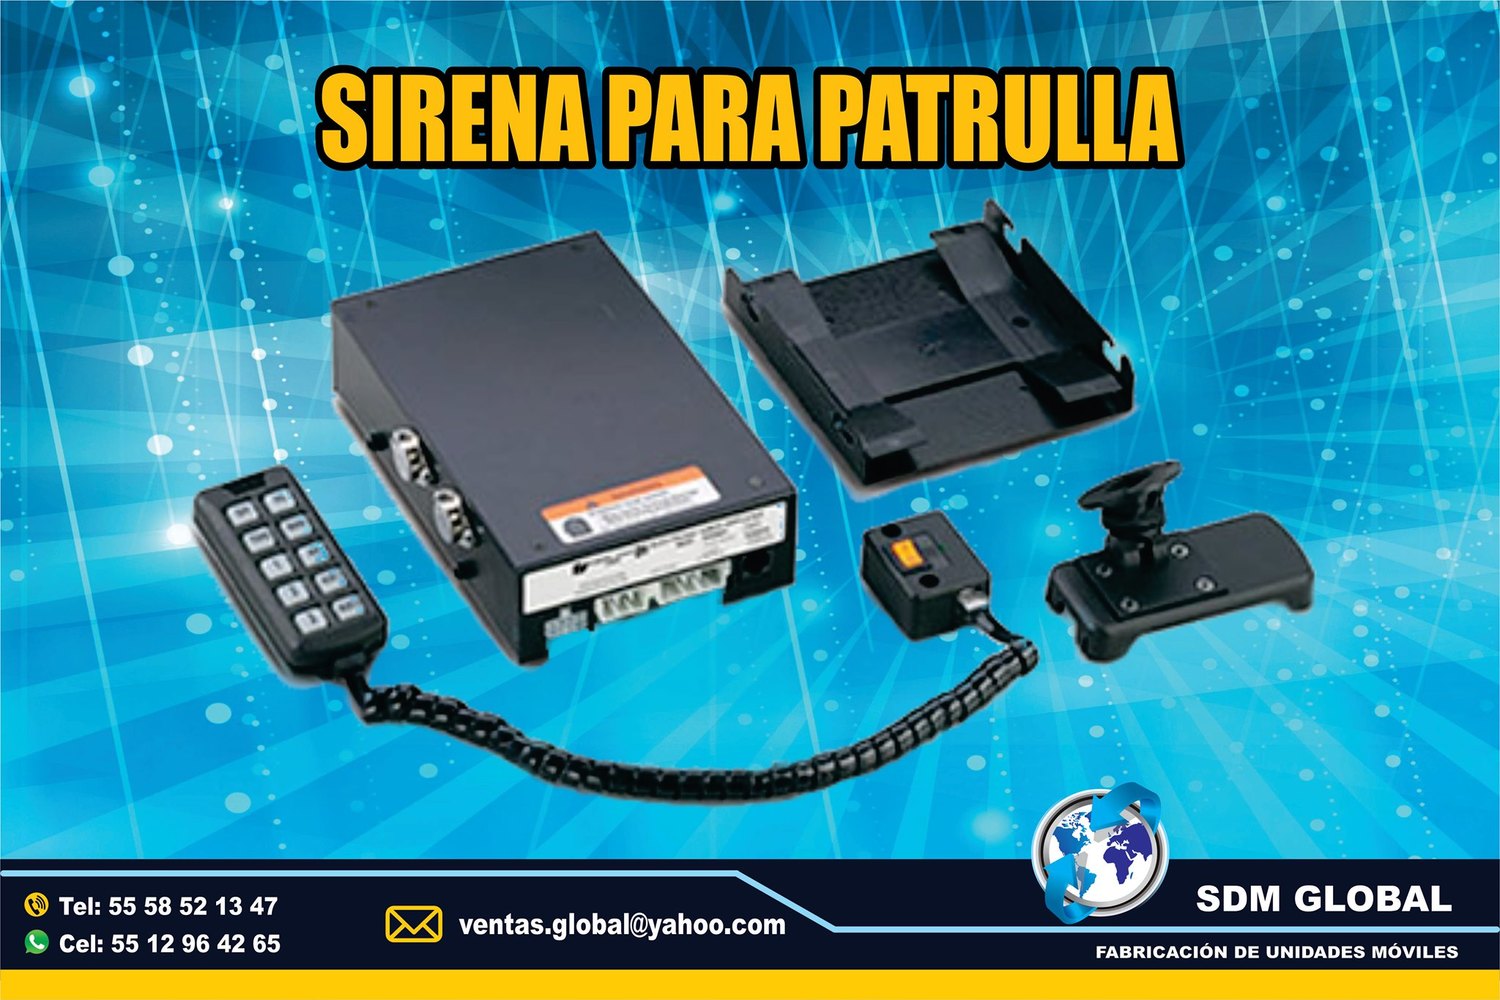 VENTA DE Sirena y equipo para ambulancias MARCA Epcom System<br>